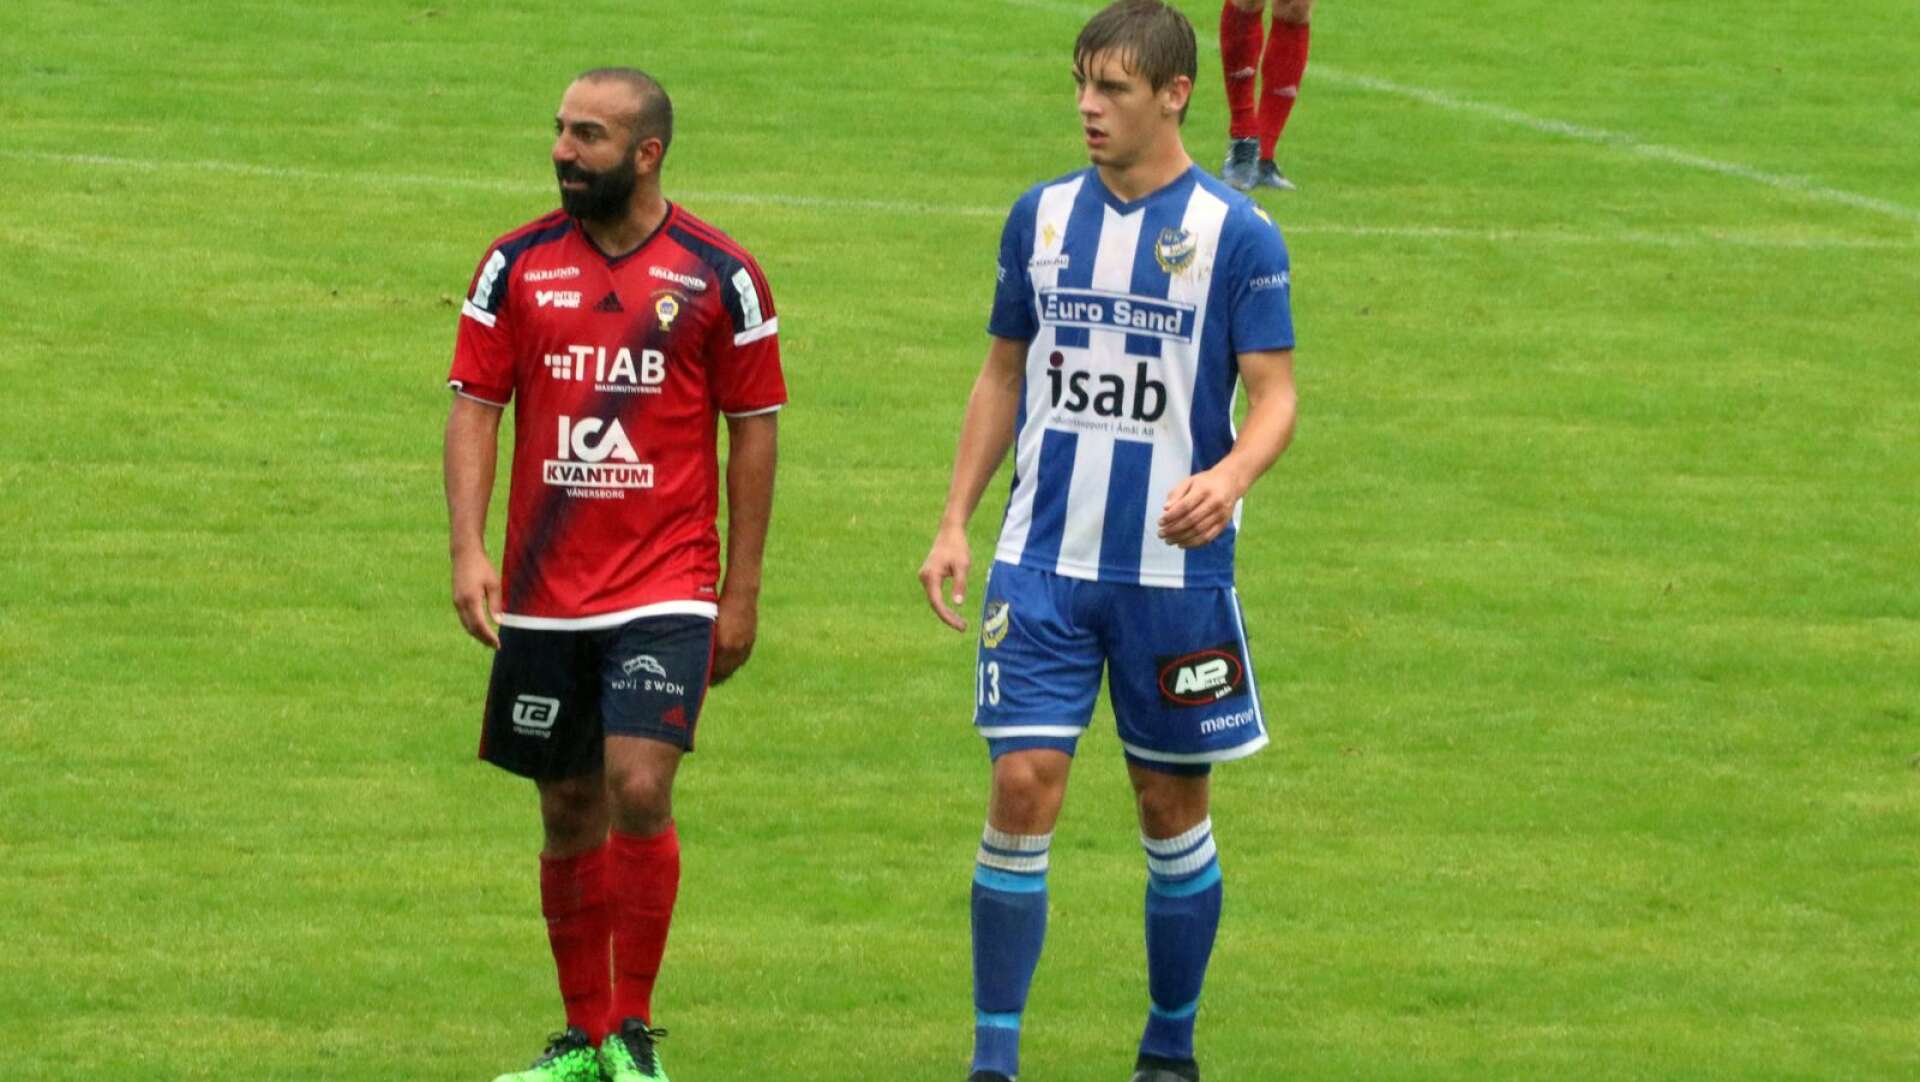 Alexander Hagelberg (till höger i bilden) provar vingarna i Karlstad IF fotboll och division 1 nästa säsong.